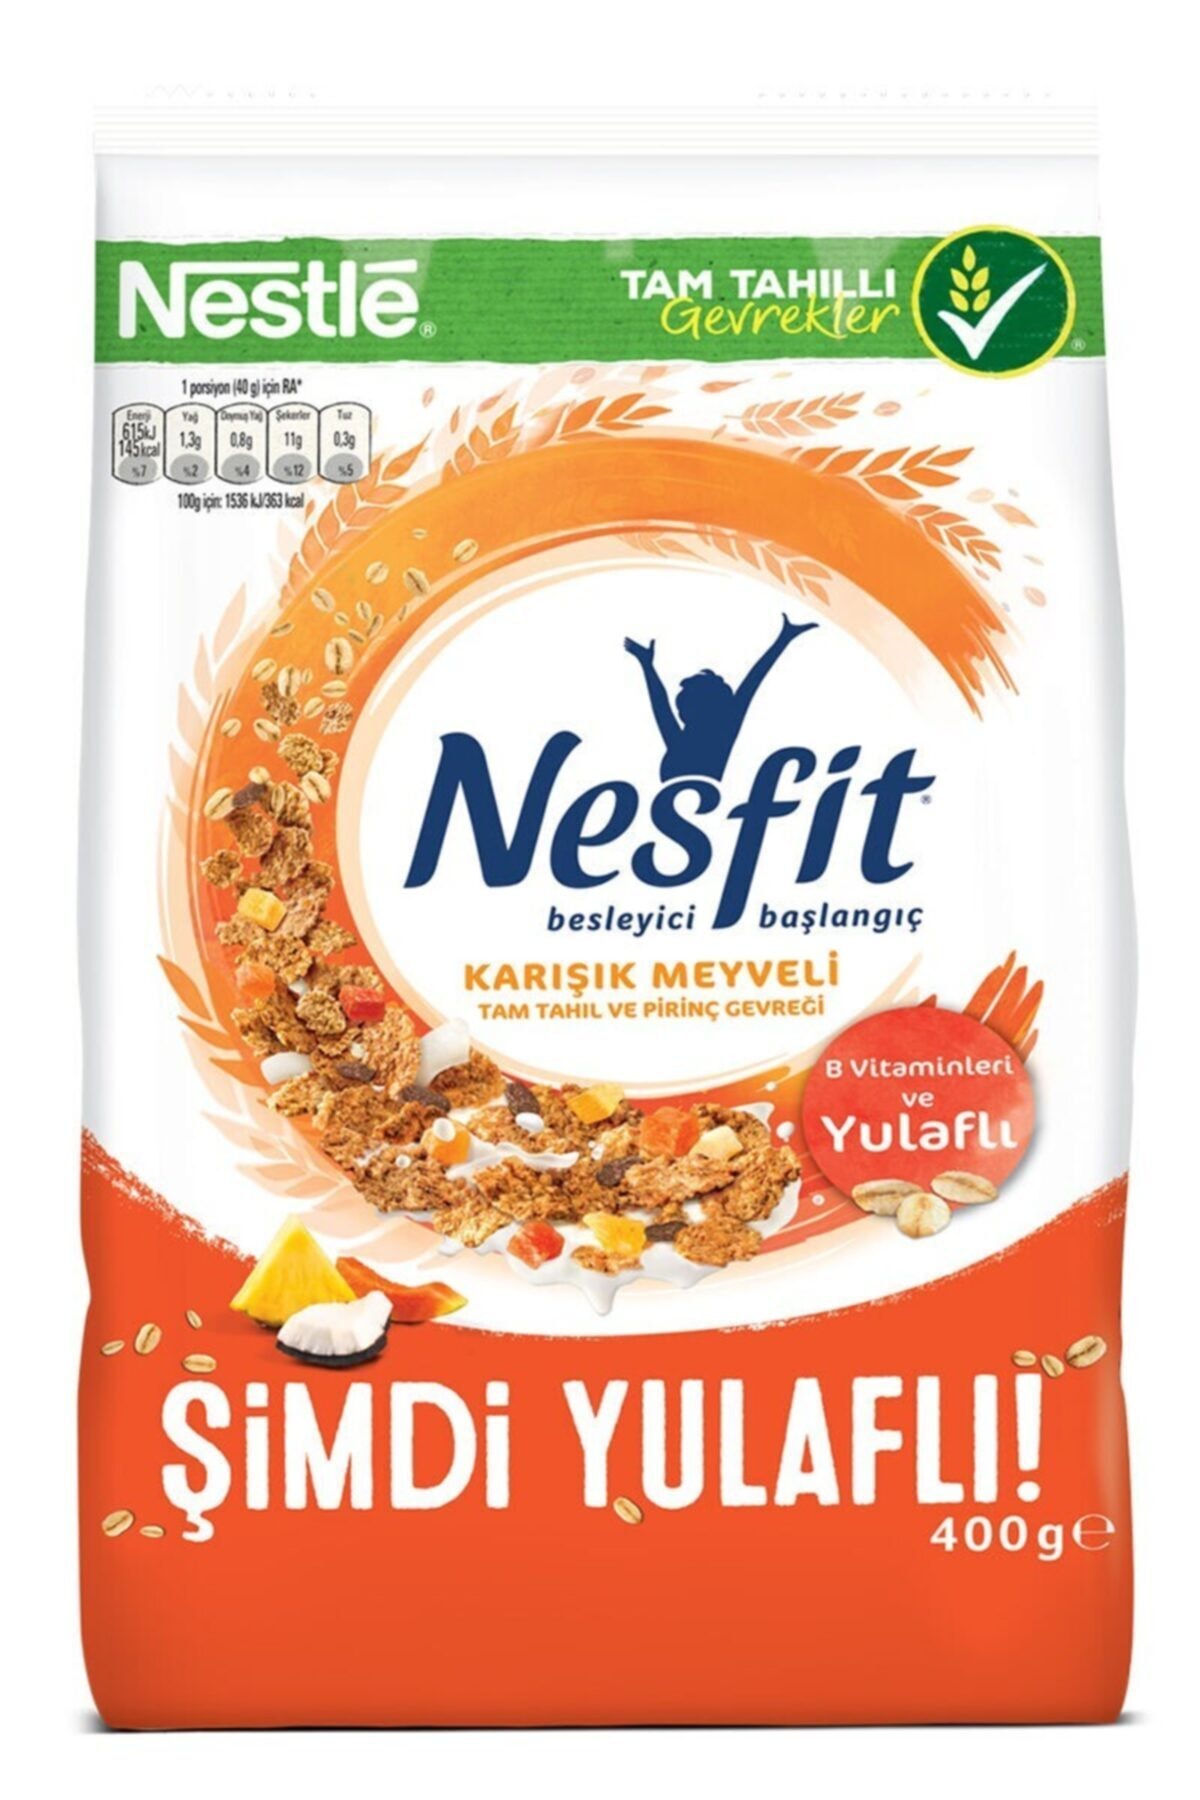 Nestle Nesfit Karışık Meyveli ve Yulaflı Mısır Gevreği 400 gr